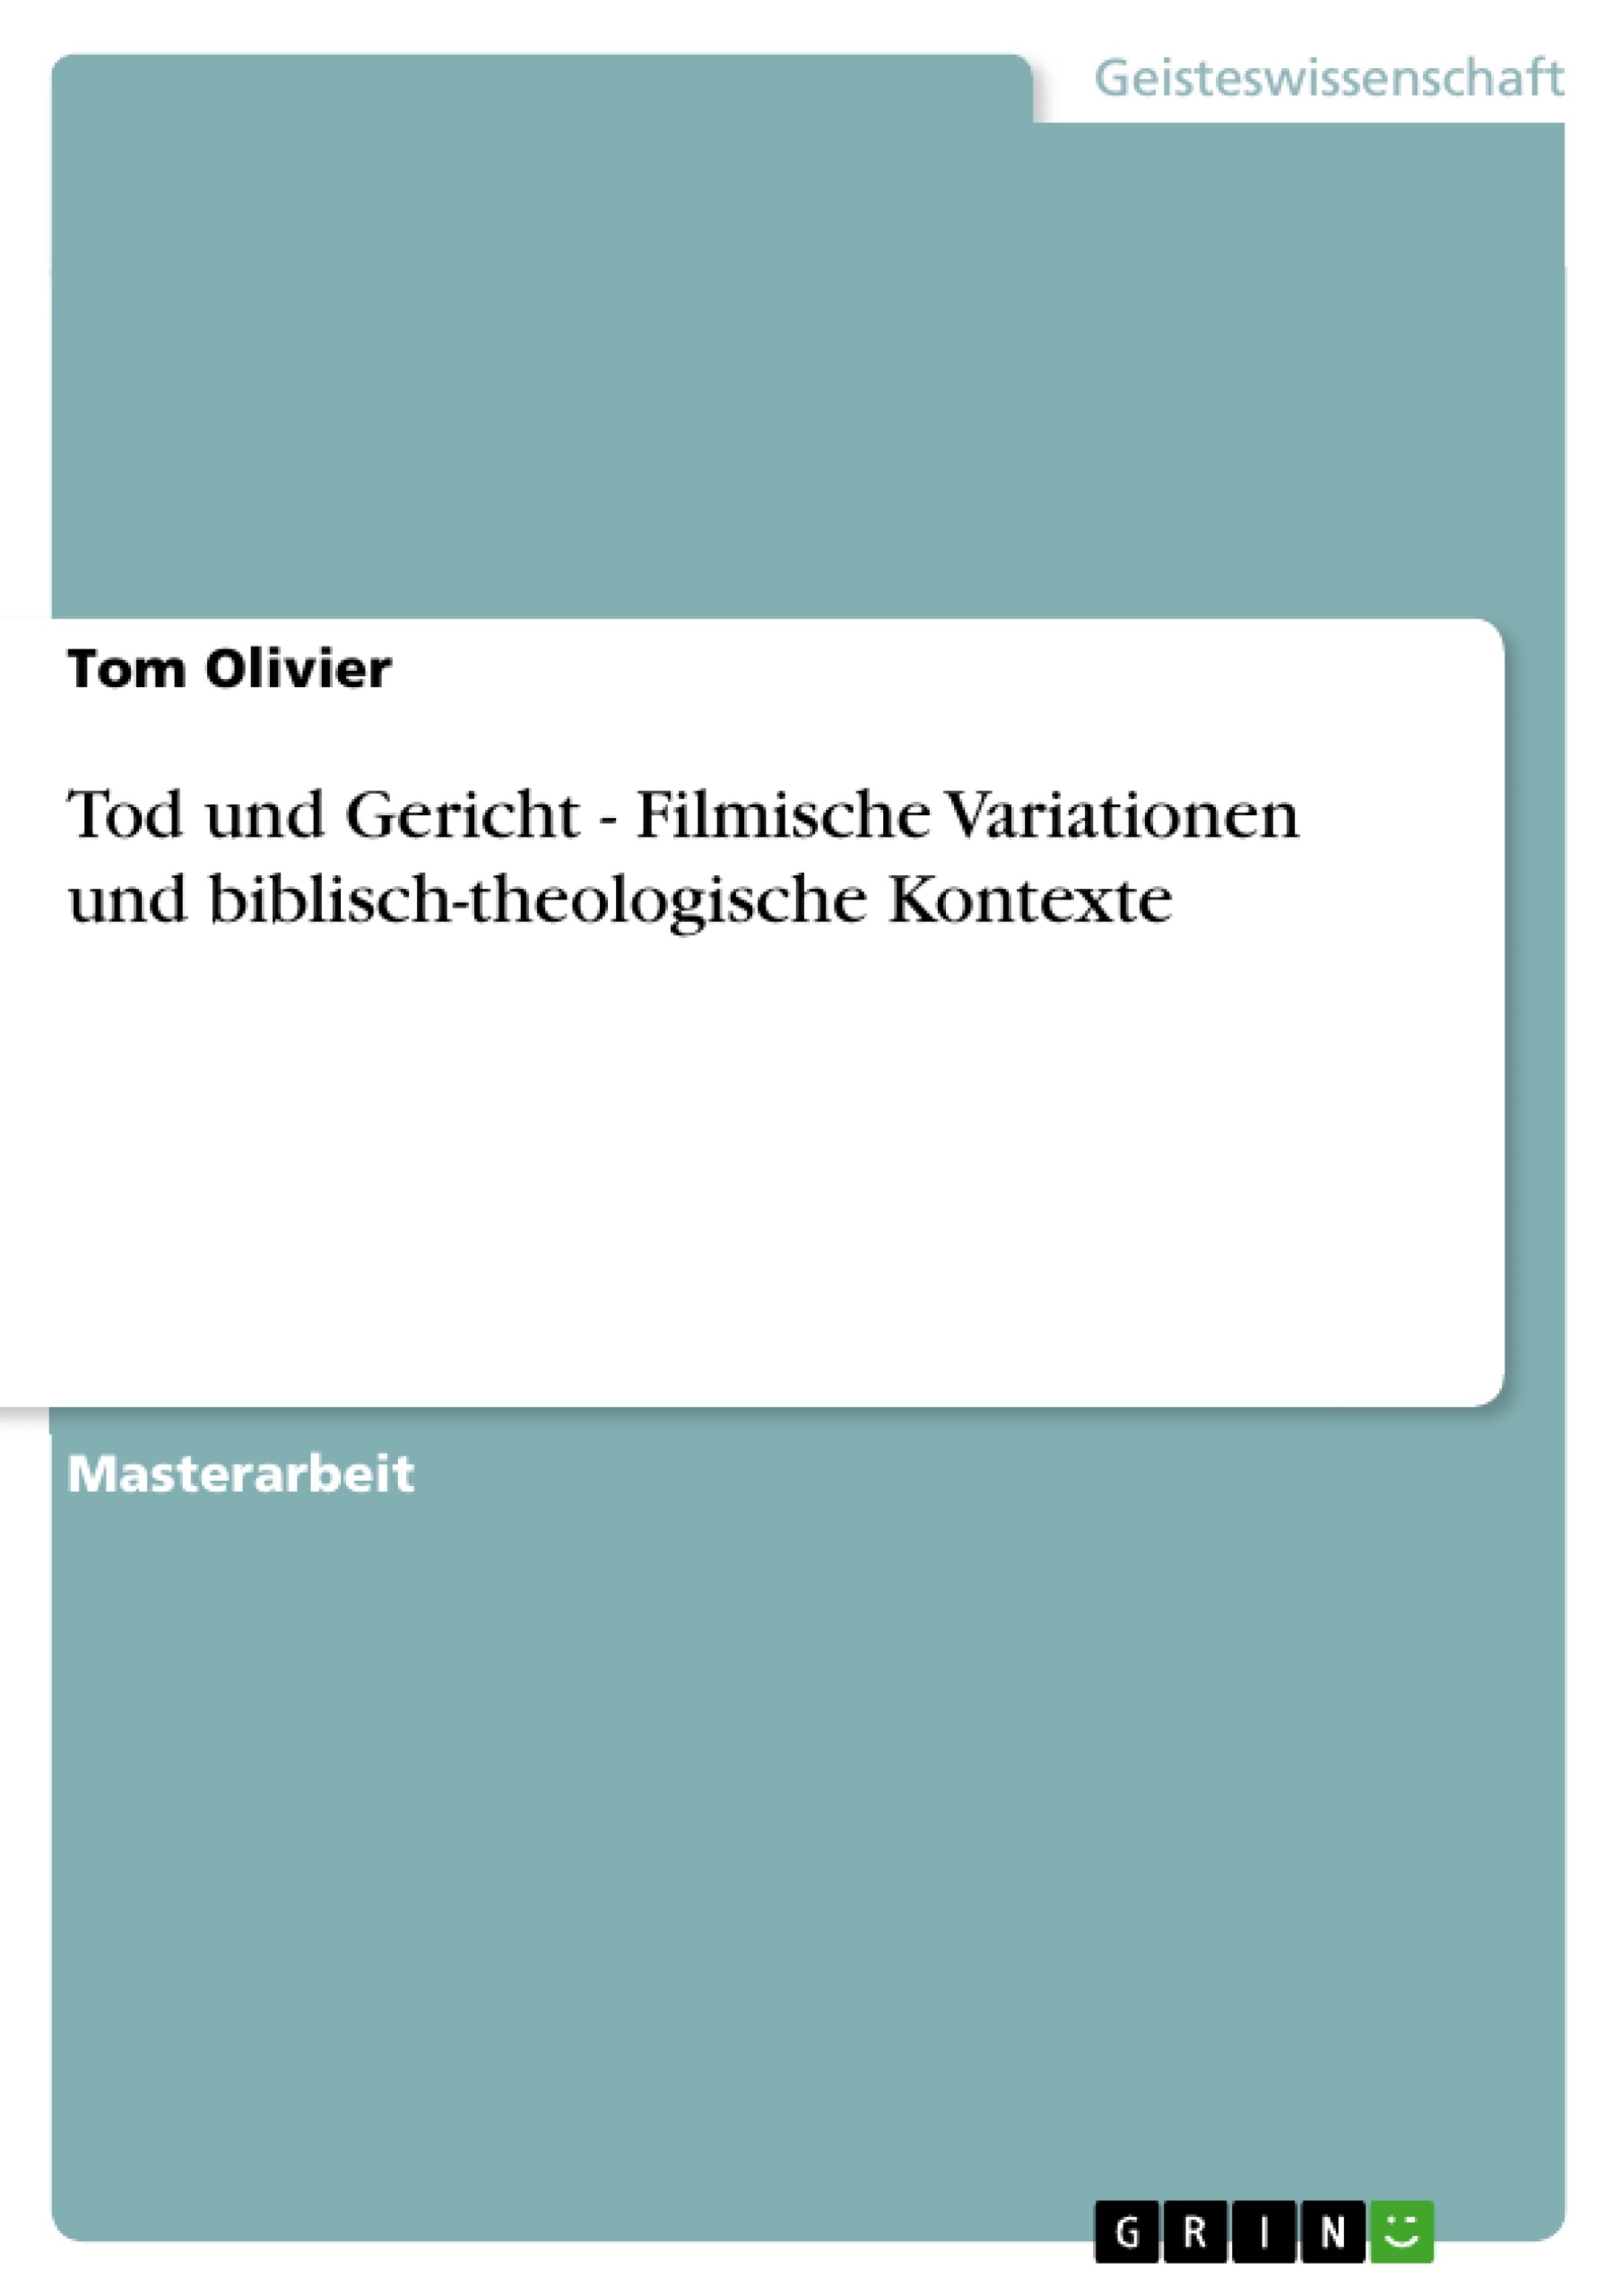 Título: Tod und Gericht - Filmische Variationen und biblisch-theologische Kontexte